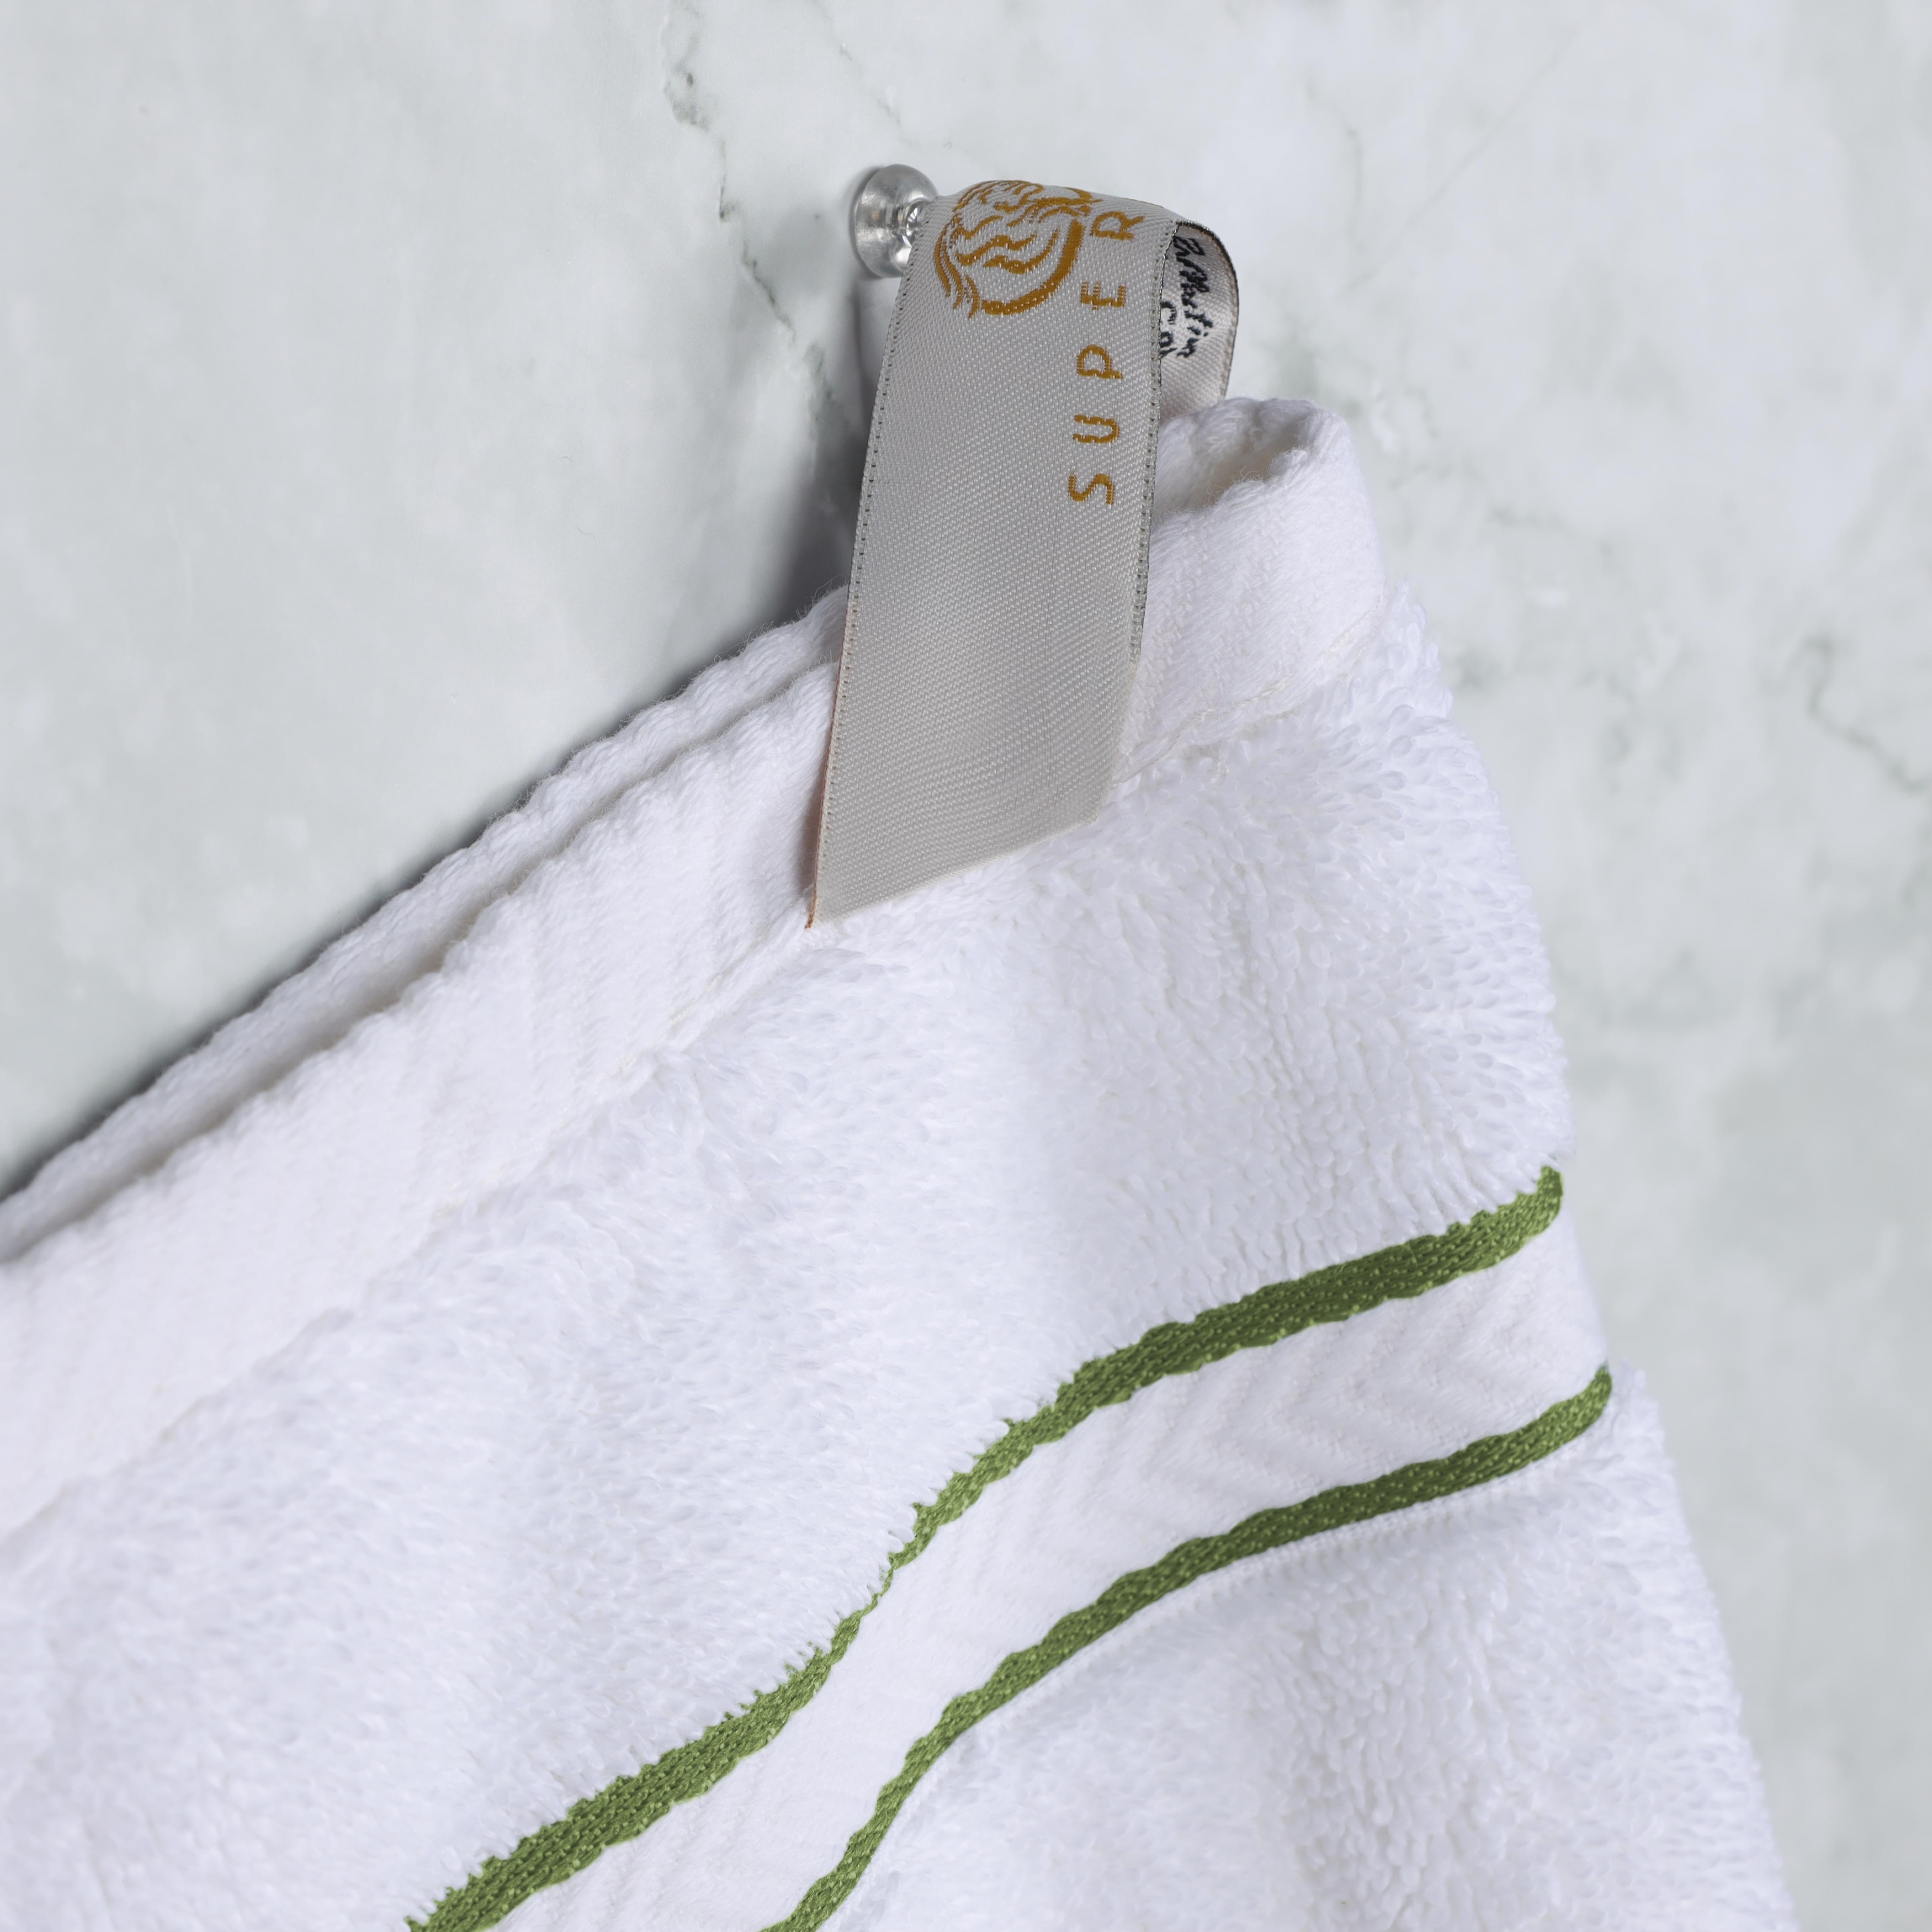 Hotel Style 6-Piece Egyptian Cotton Bath Towel Set, Platinum Silver, Size: 6 Piece Bath Towel Set